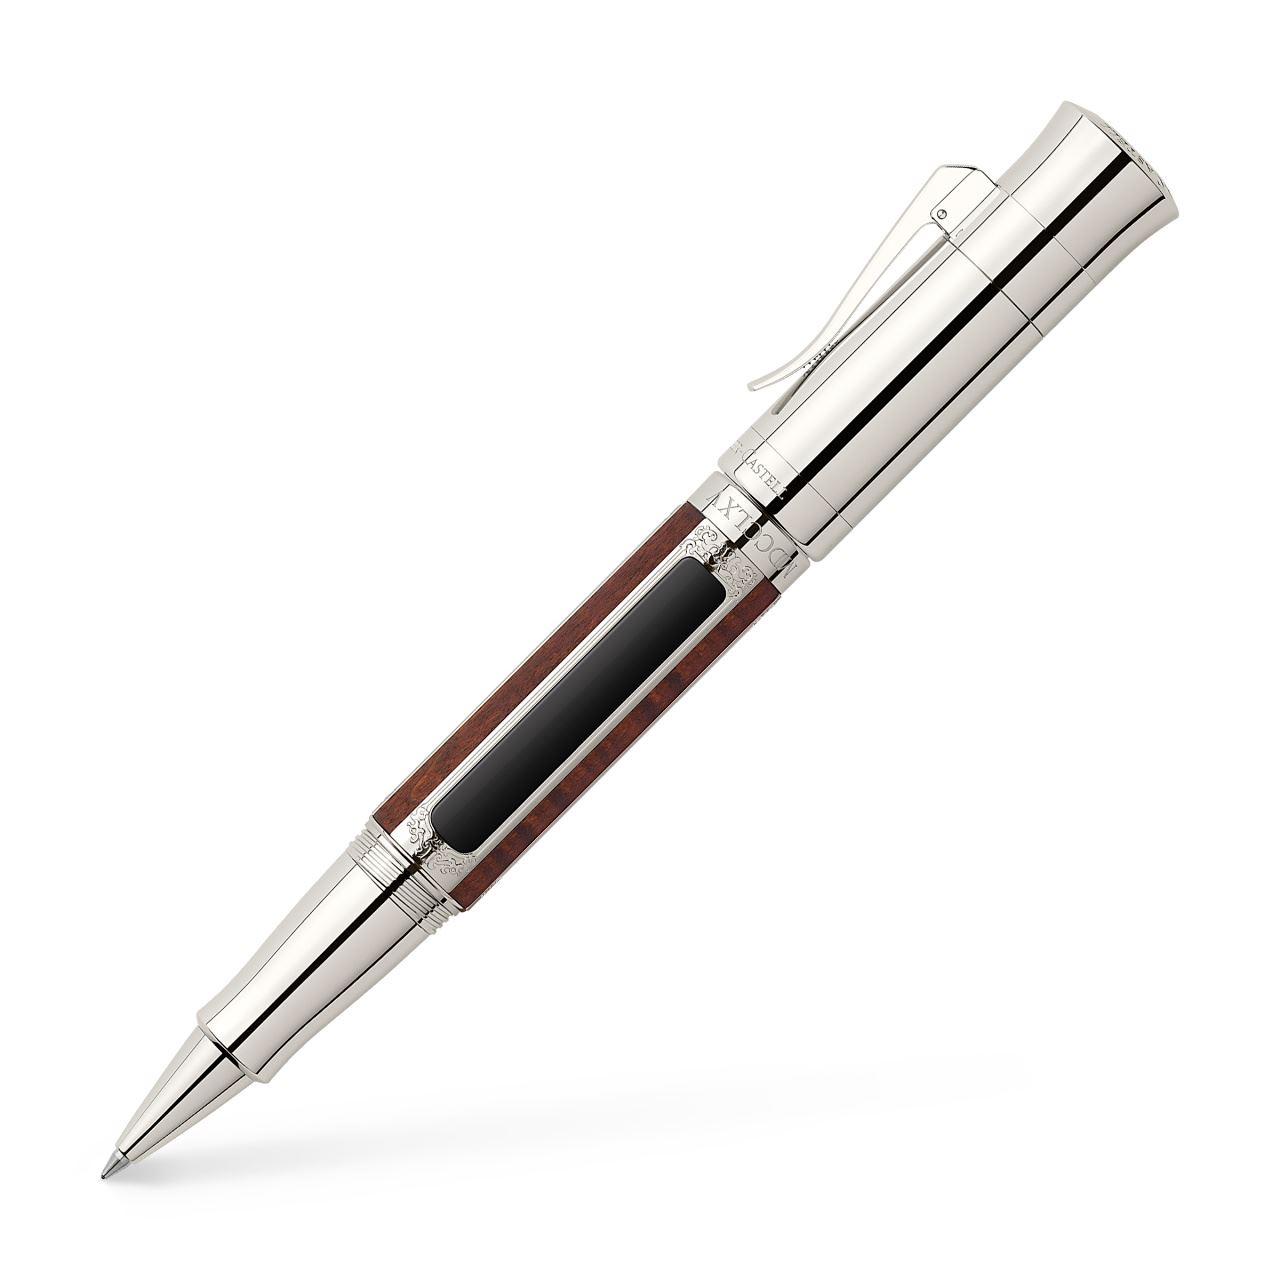 Graf-von-Faber-Castell - Tintenroller Pen of the Year 2016 platiniert